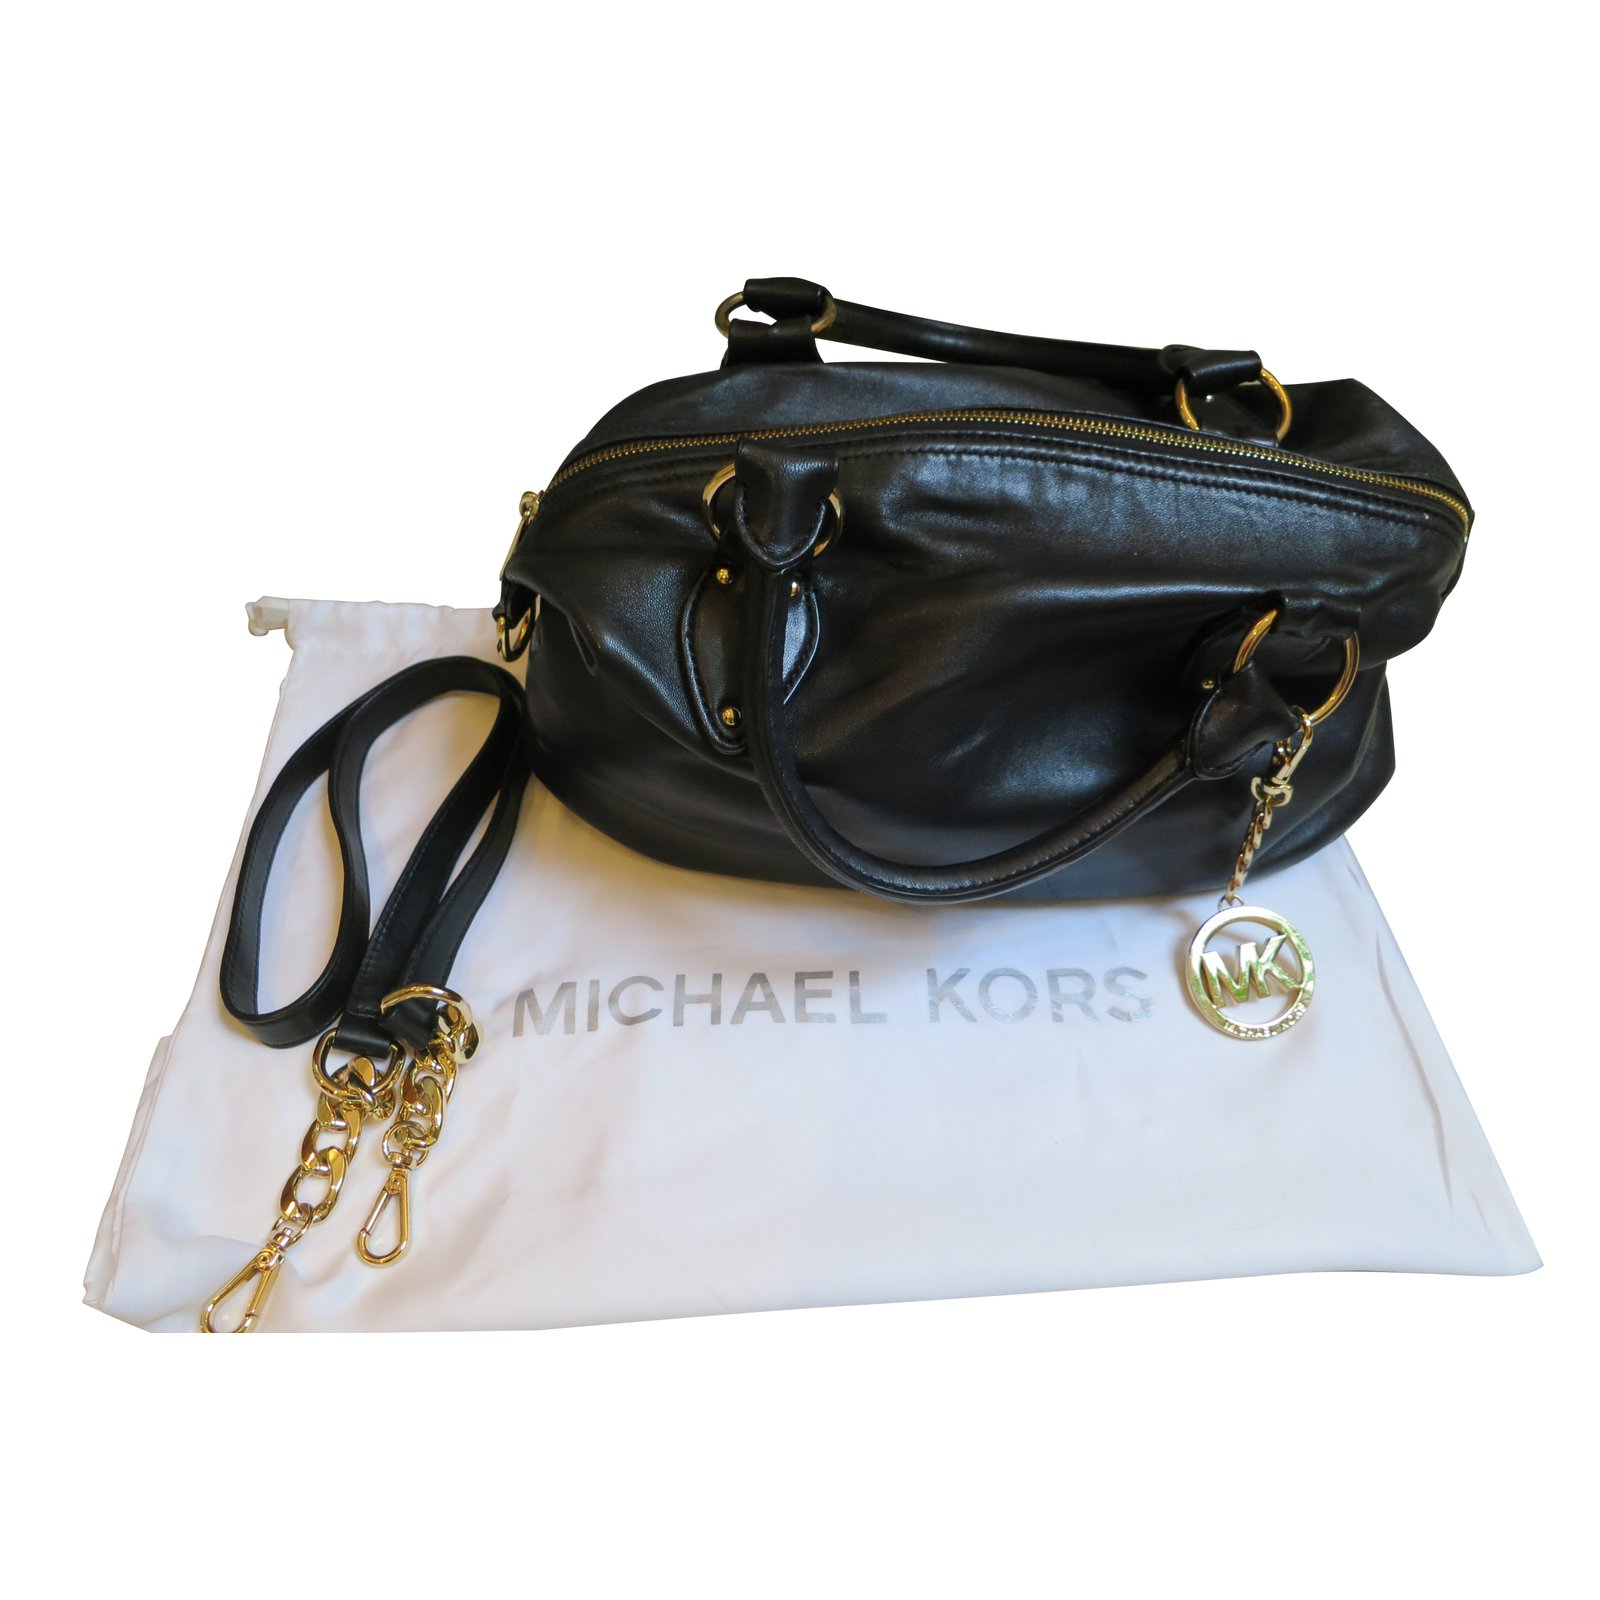 pictures of michael kors handbags